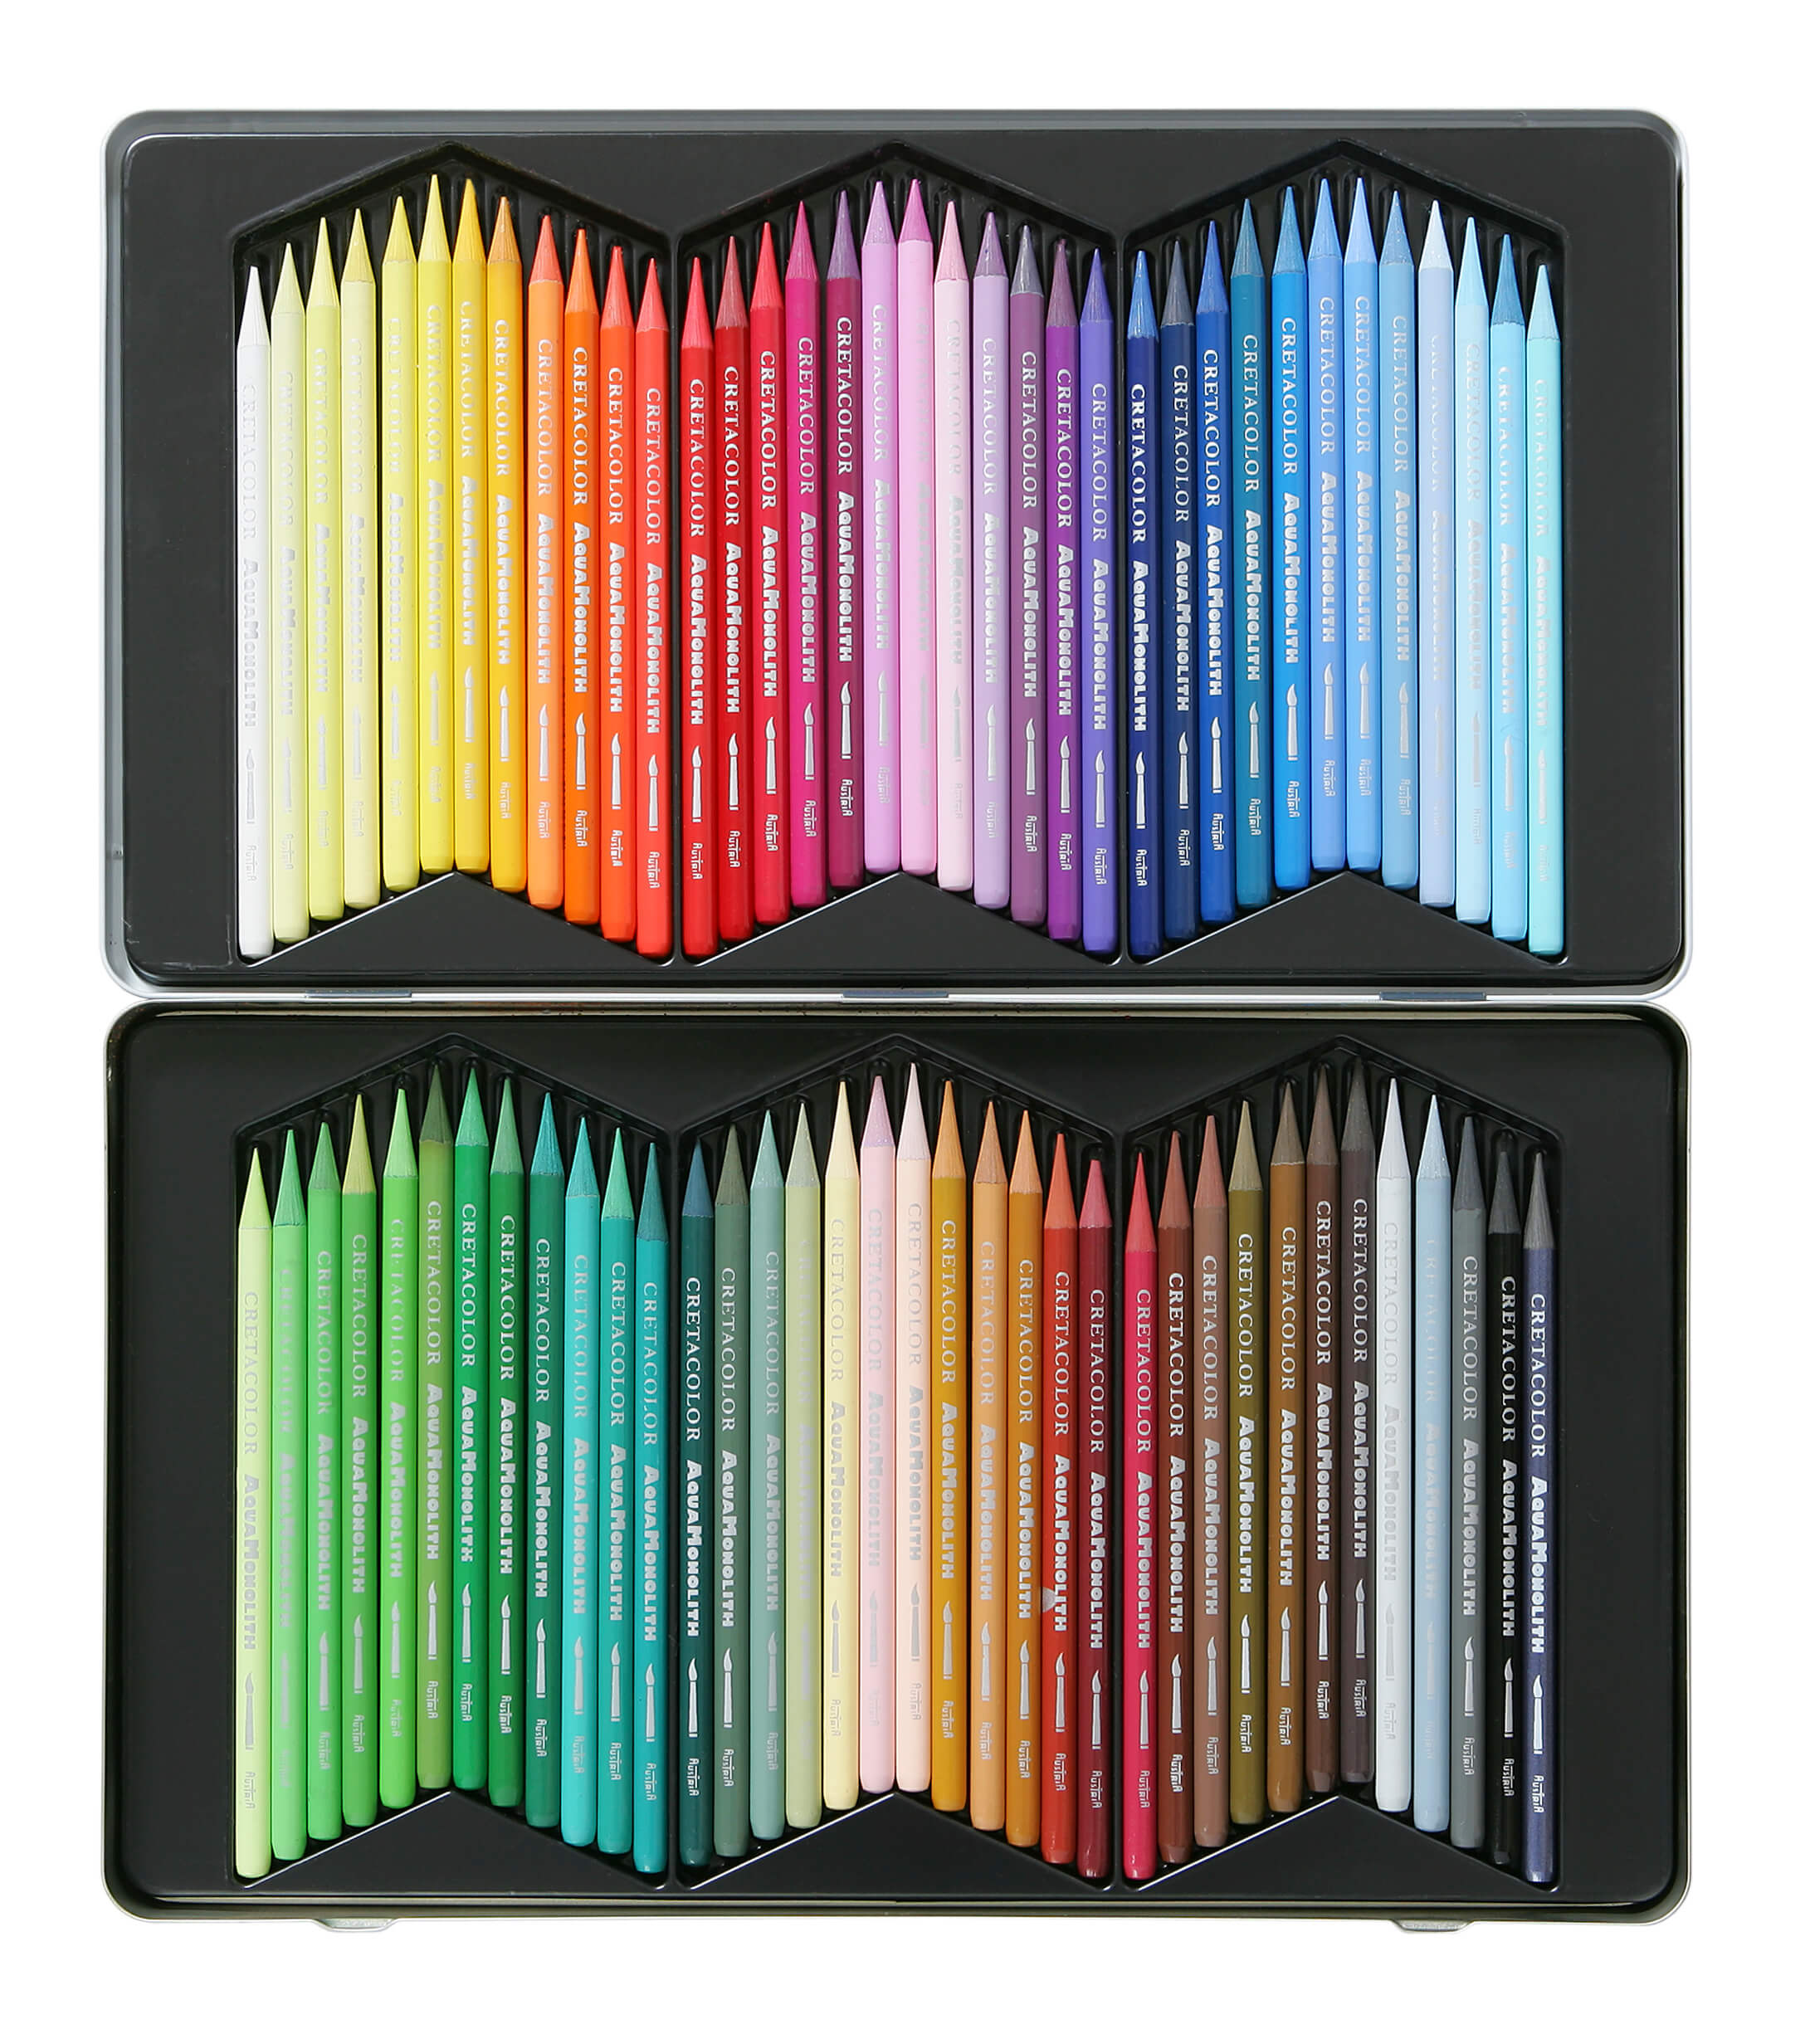 Cretacolor Monolith watercolor pencils